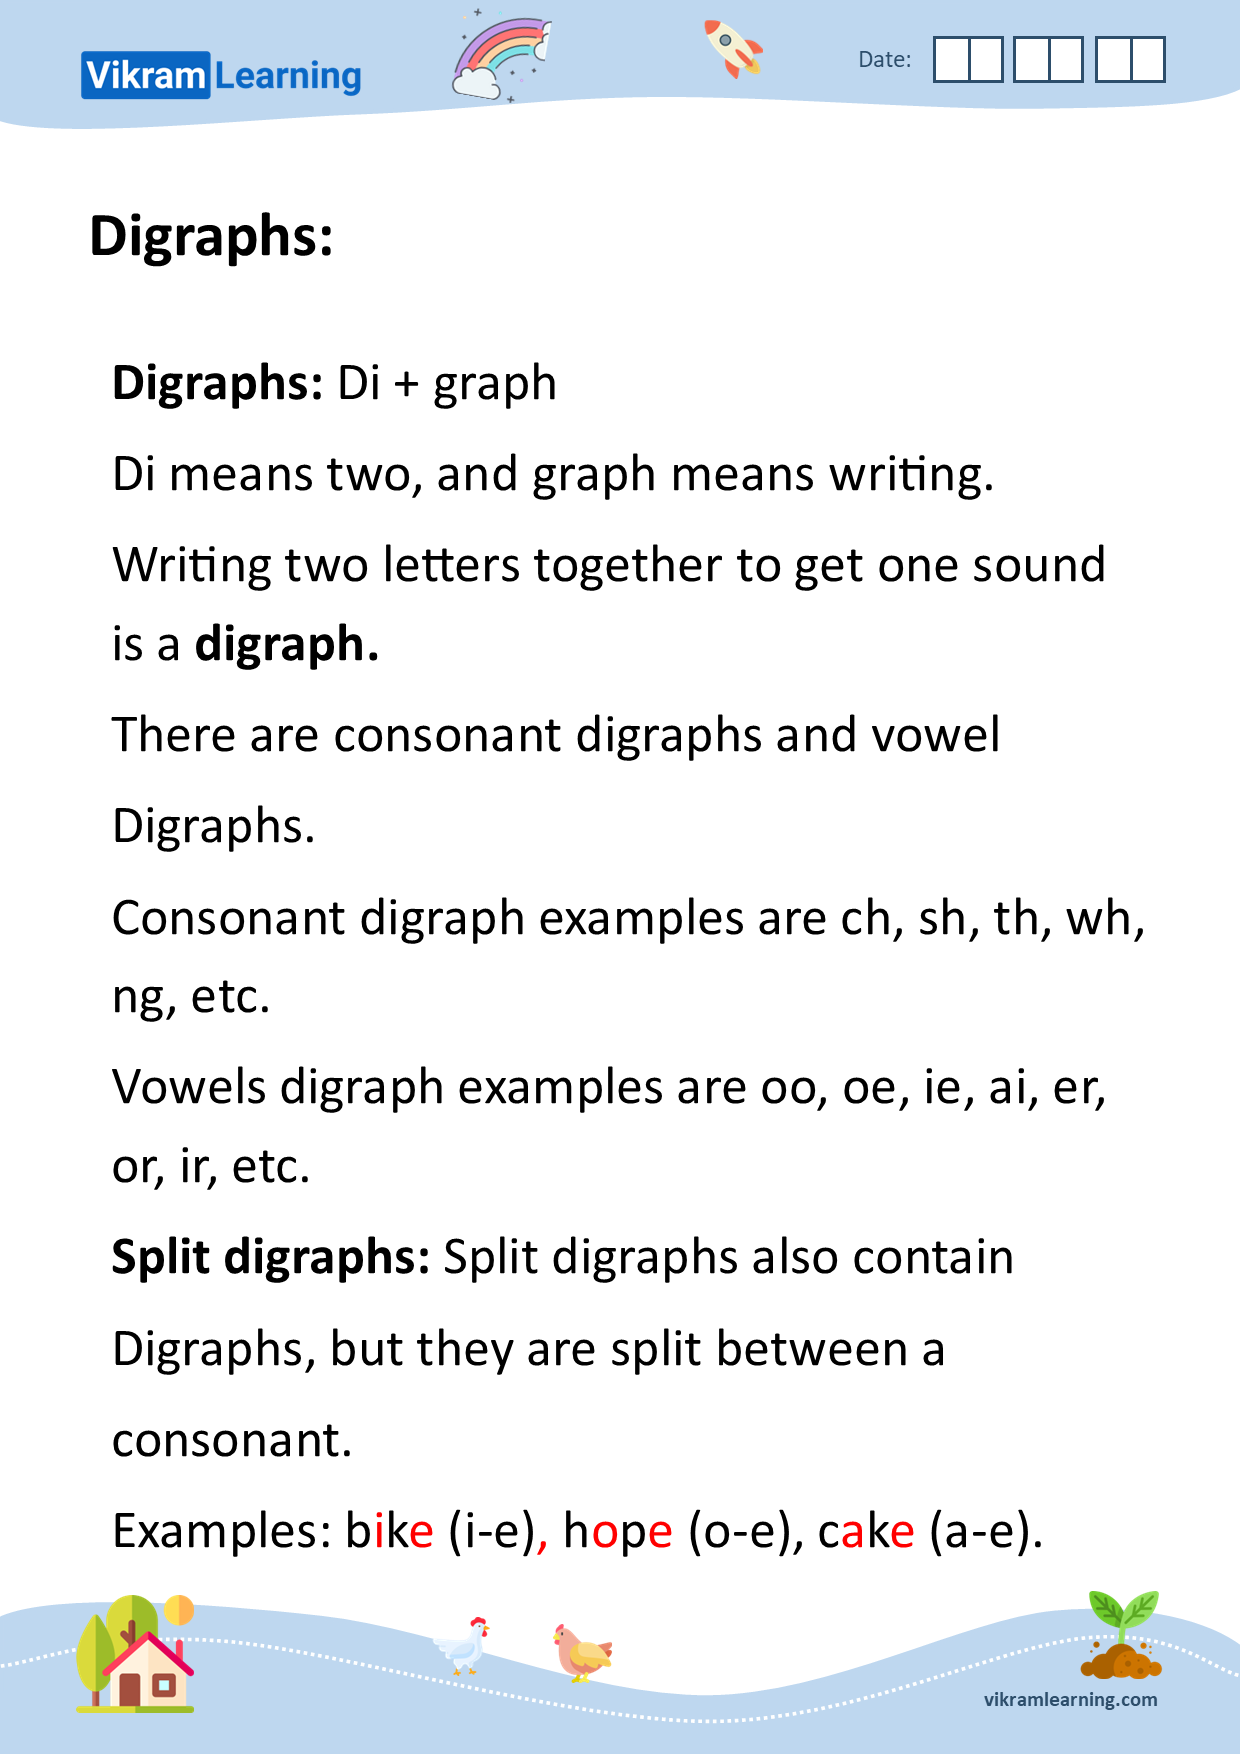 Download digraphs and split digraphs worksheets